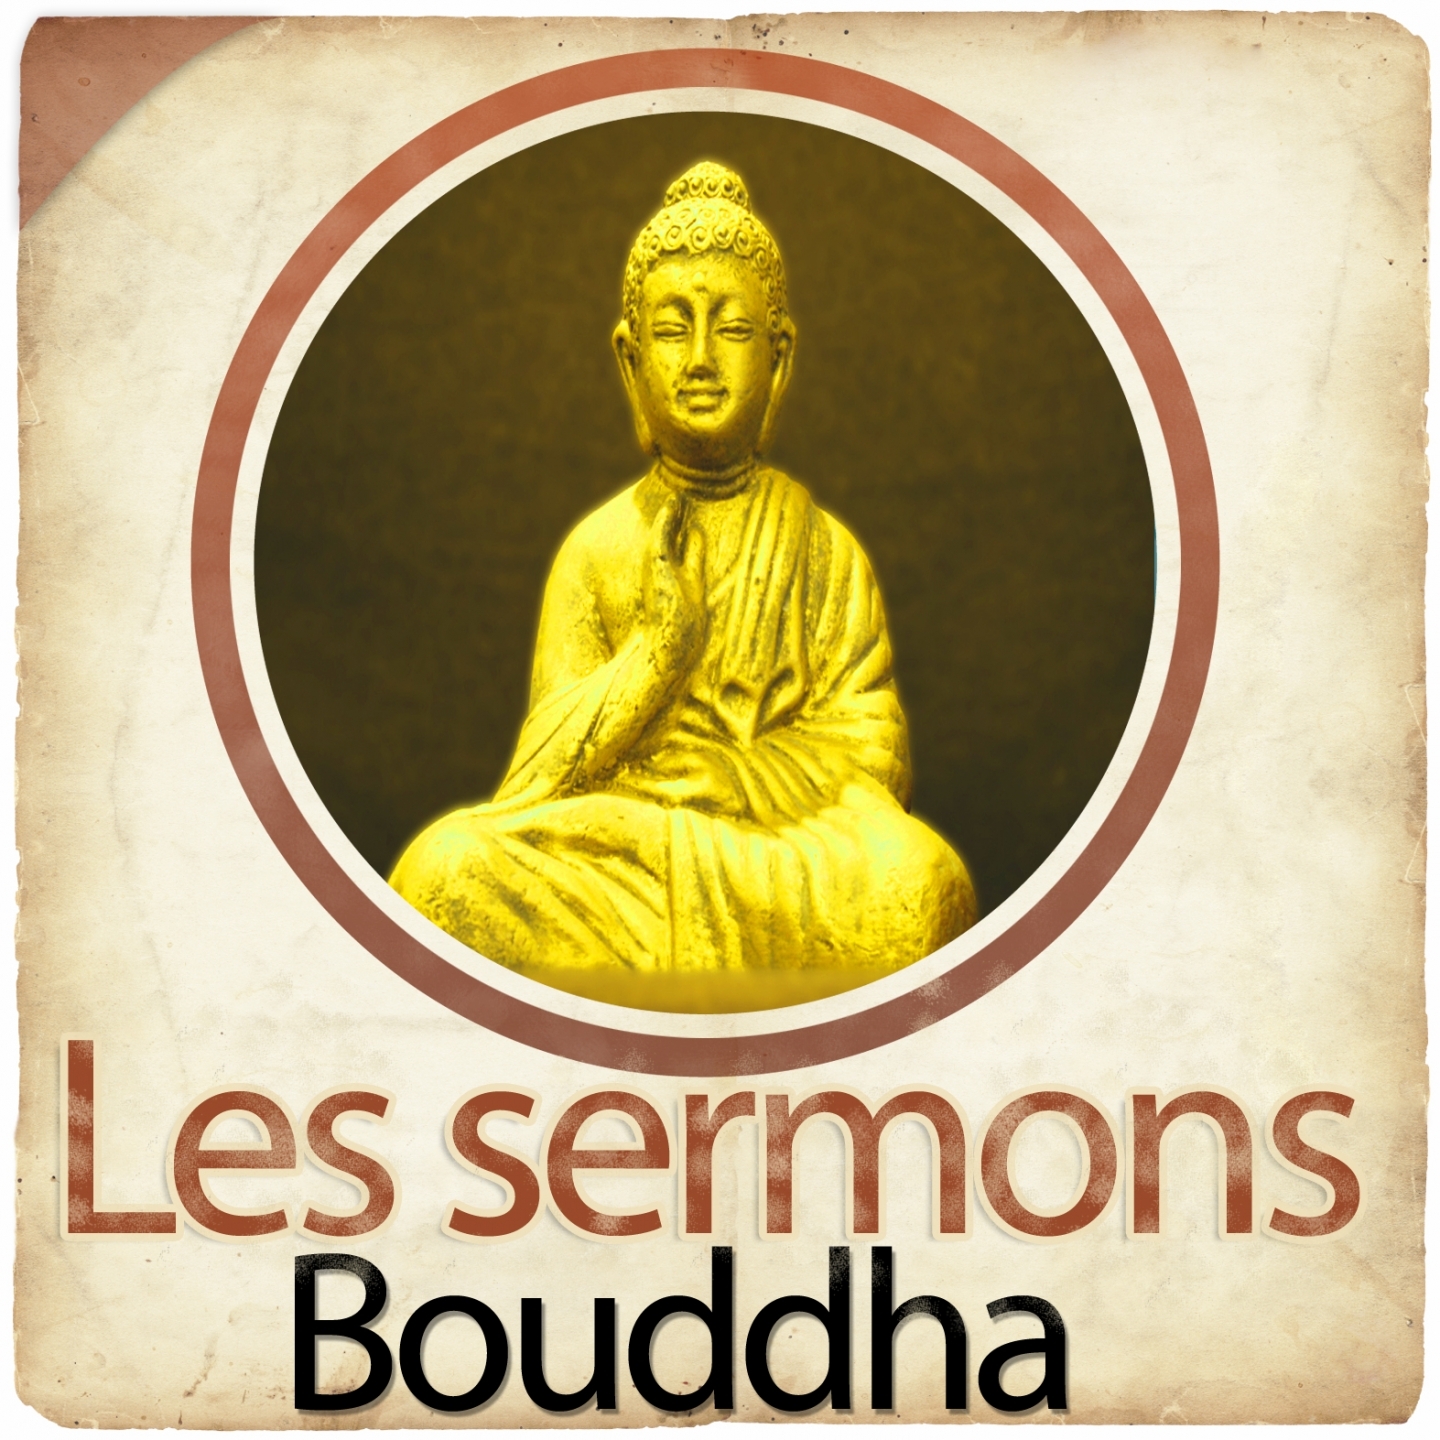 Les sermons de Bouddha, chapitre 21